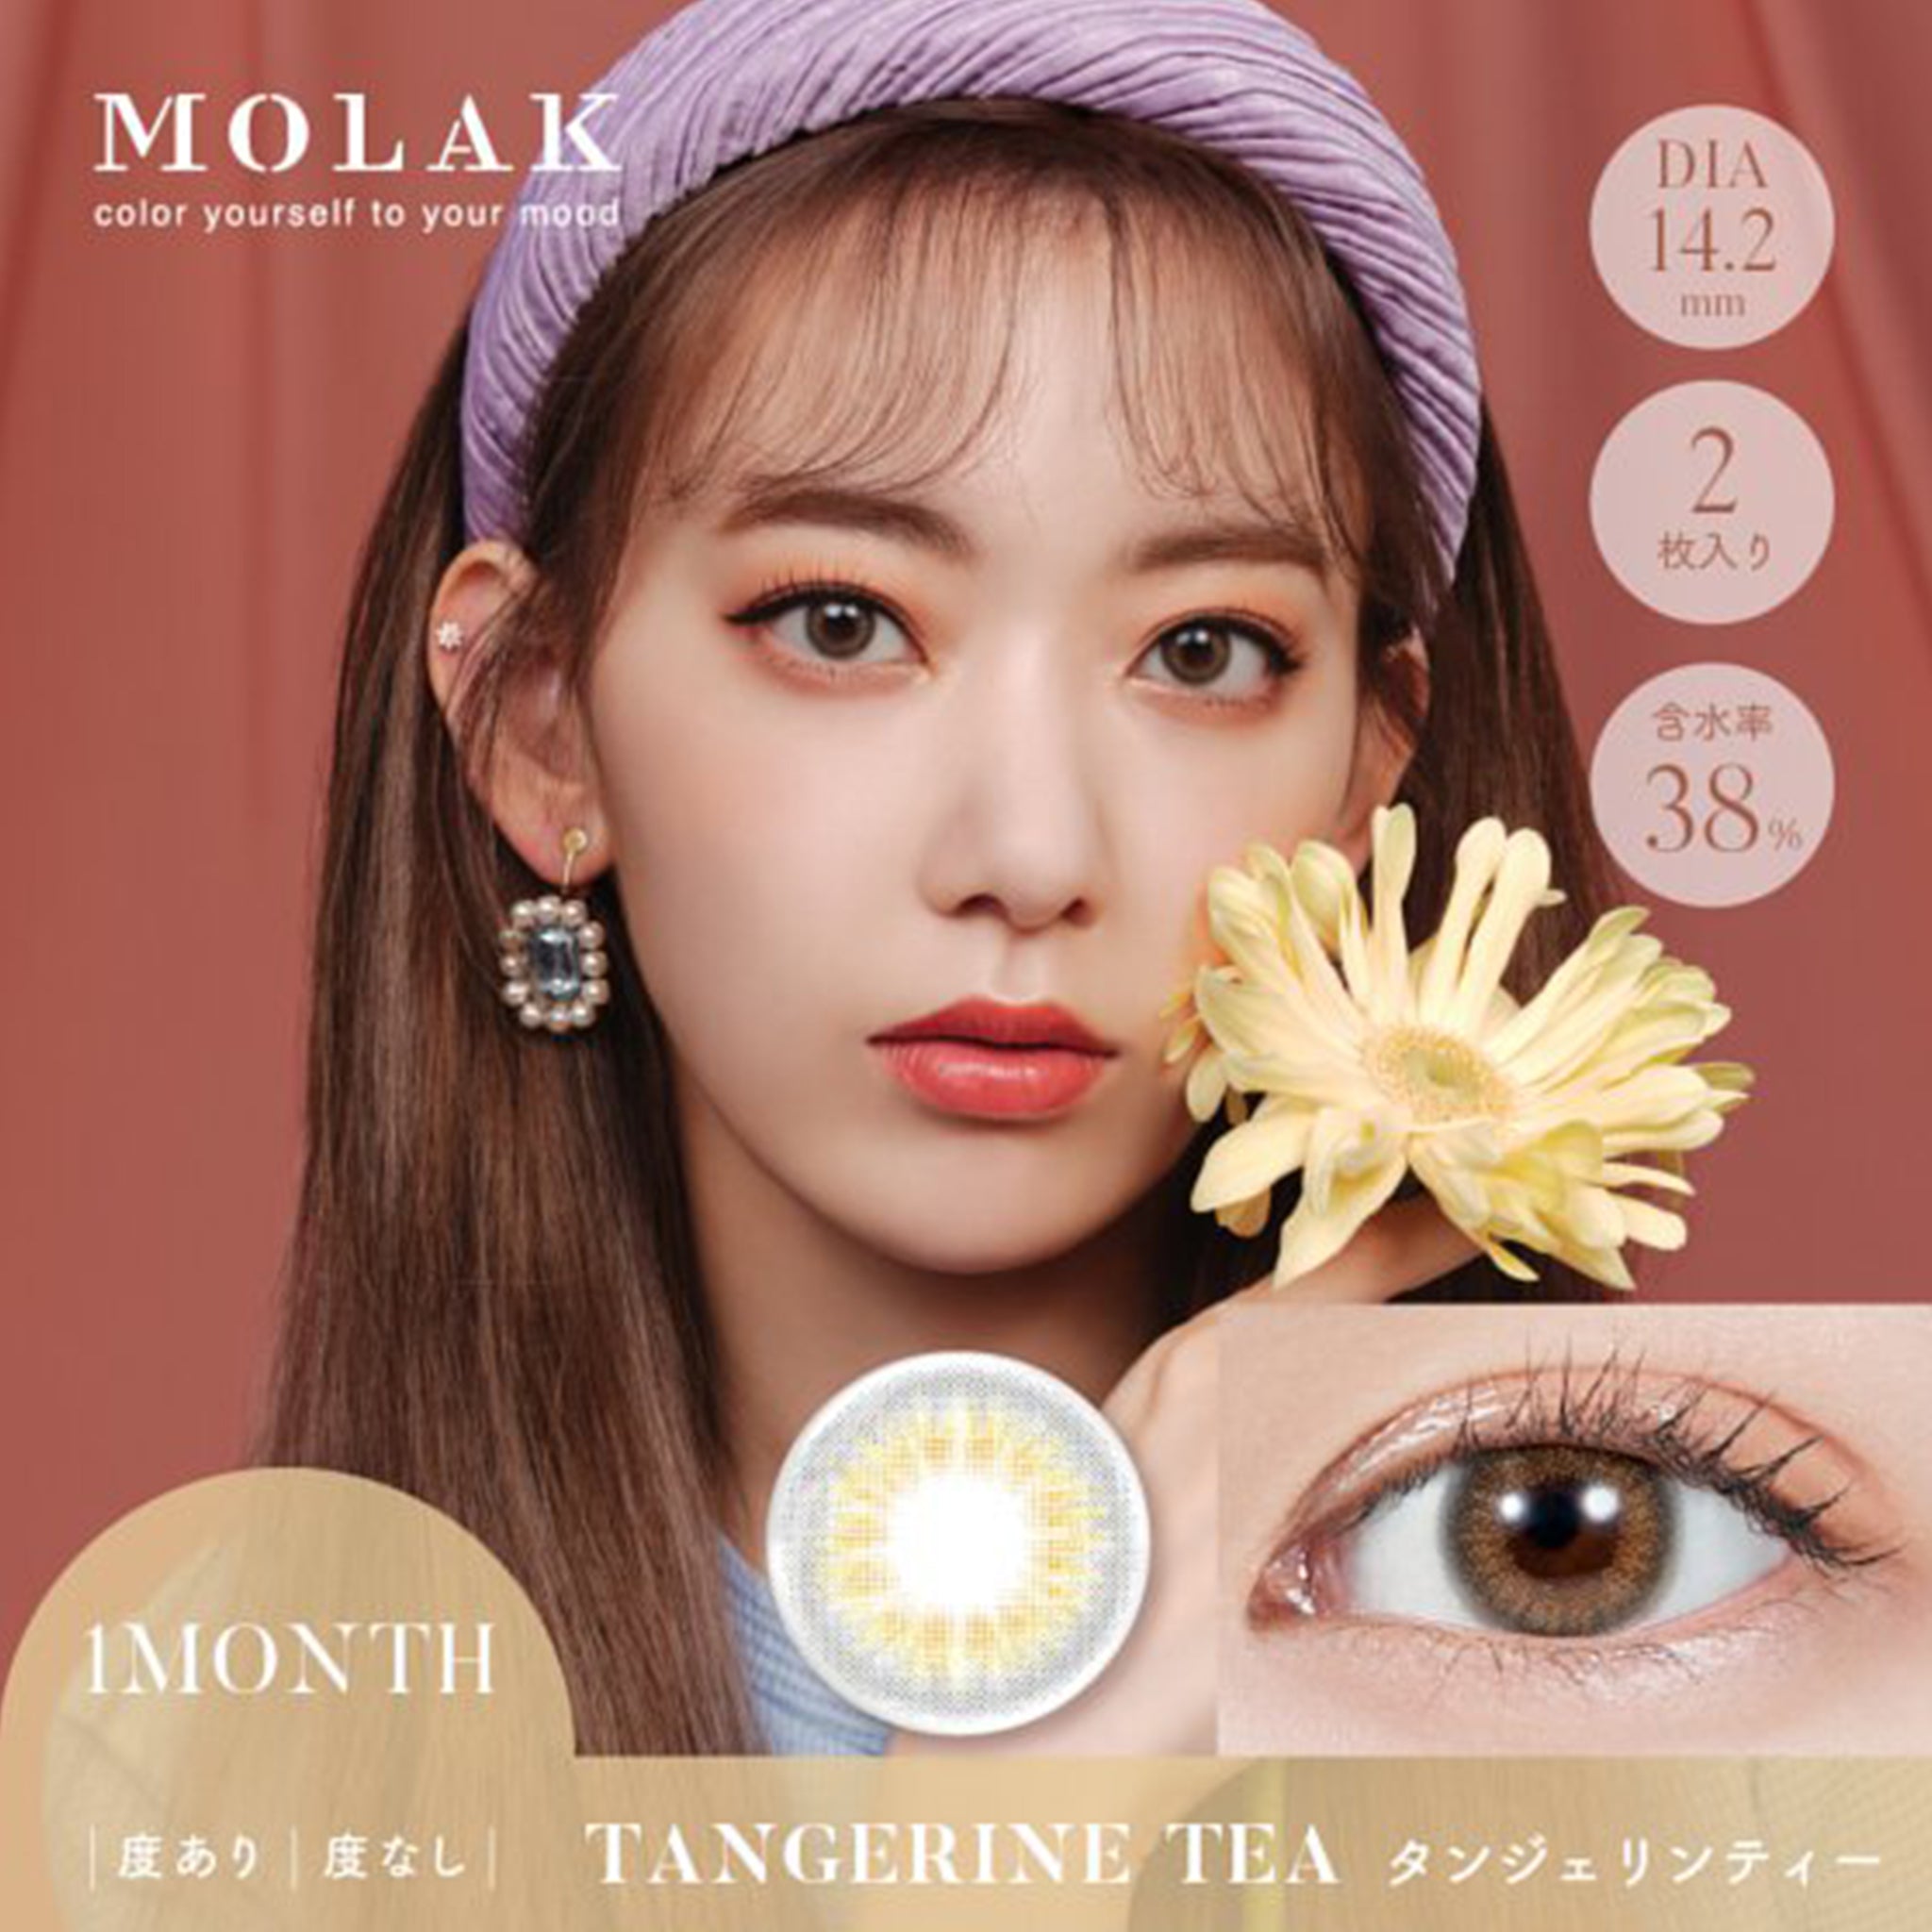 MOLAK 1 Month Color Lens-Tangerine Tea 2lenses